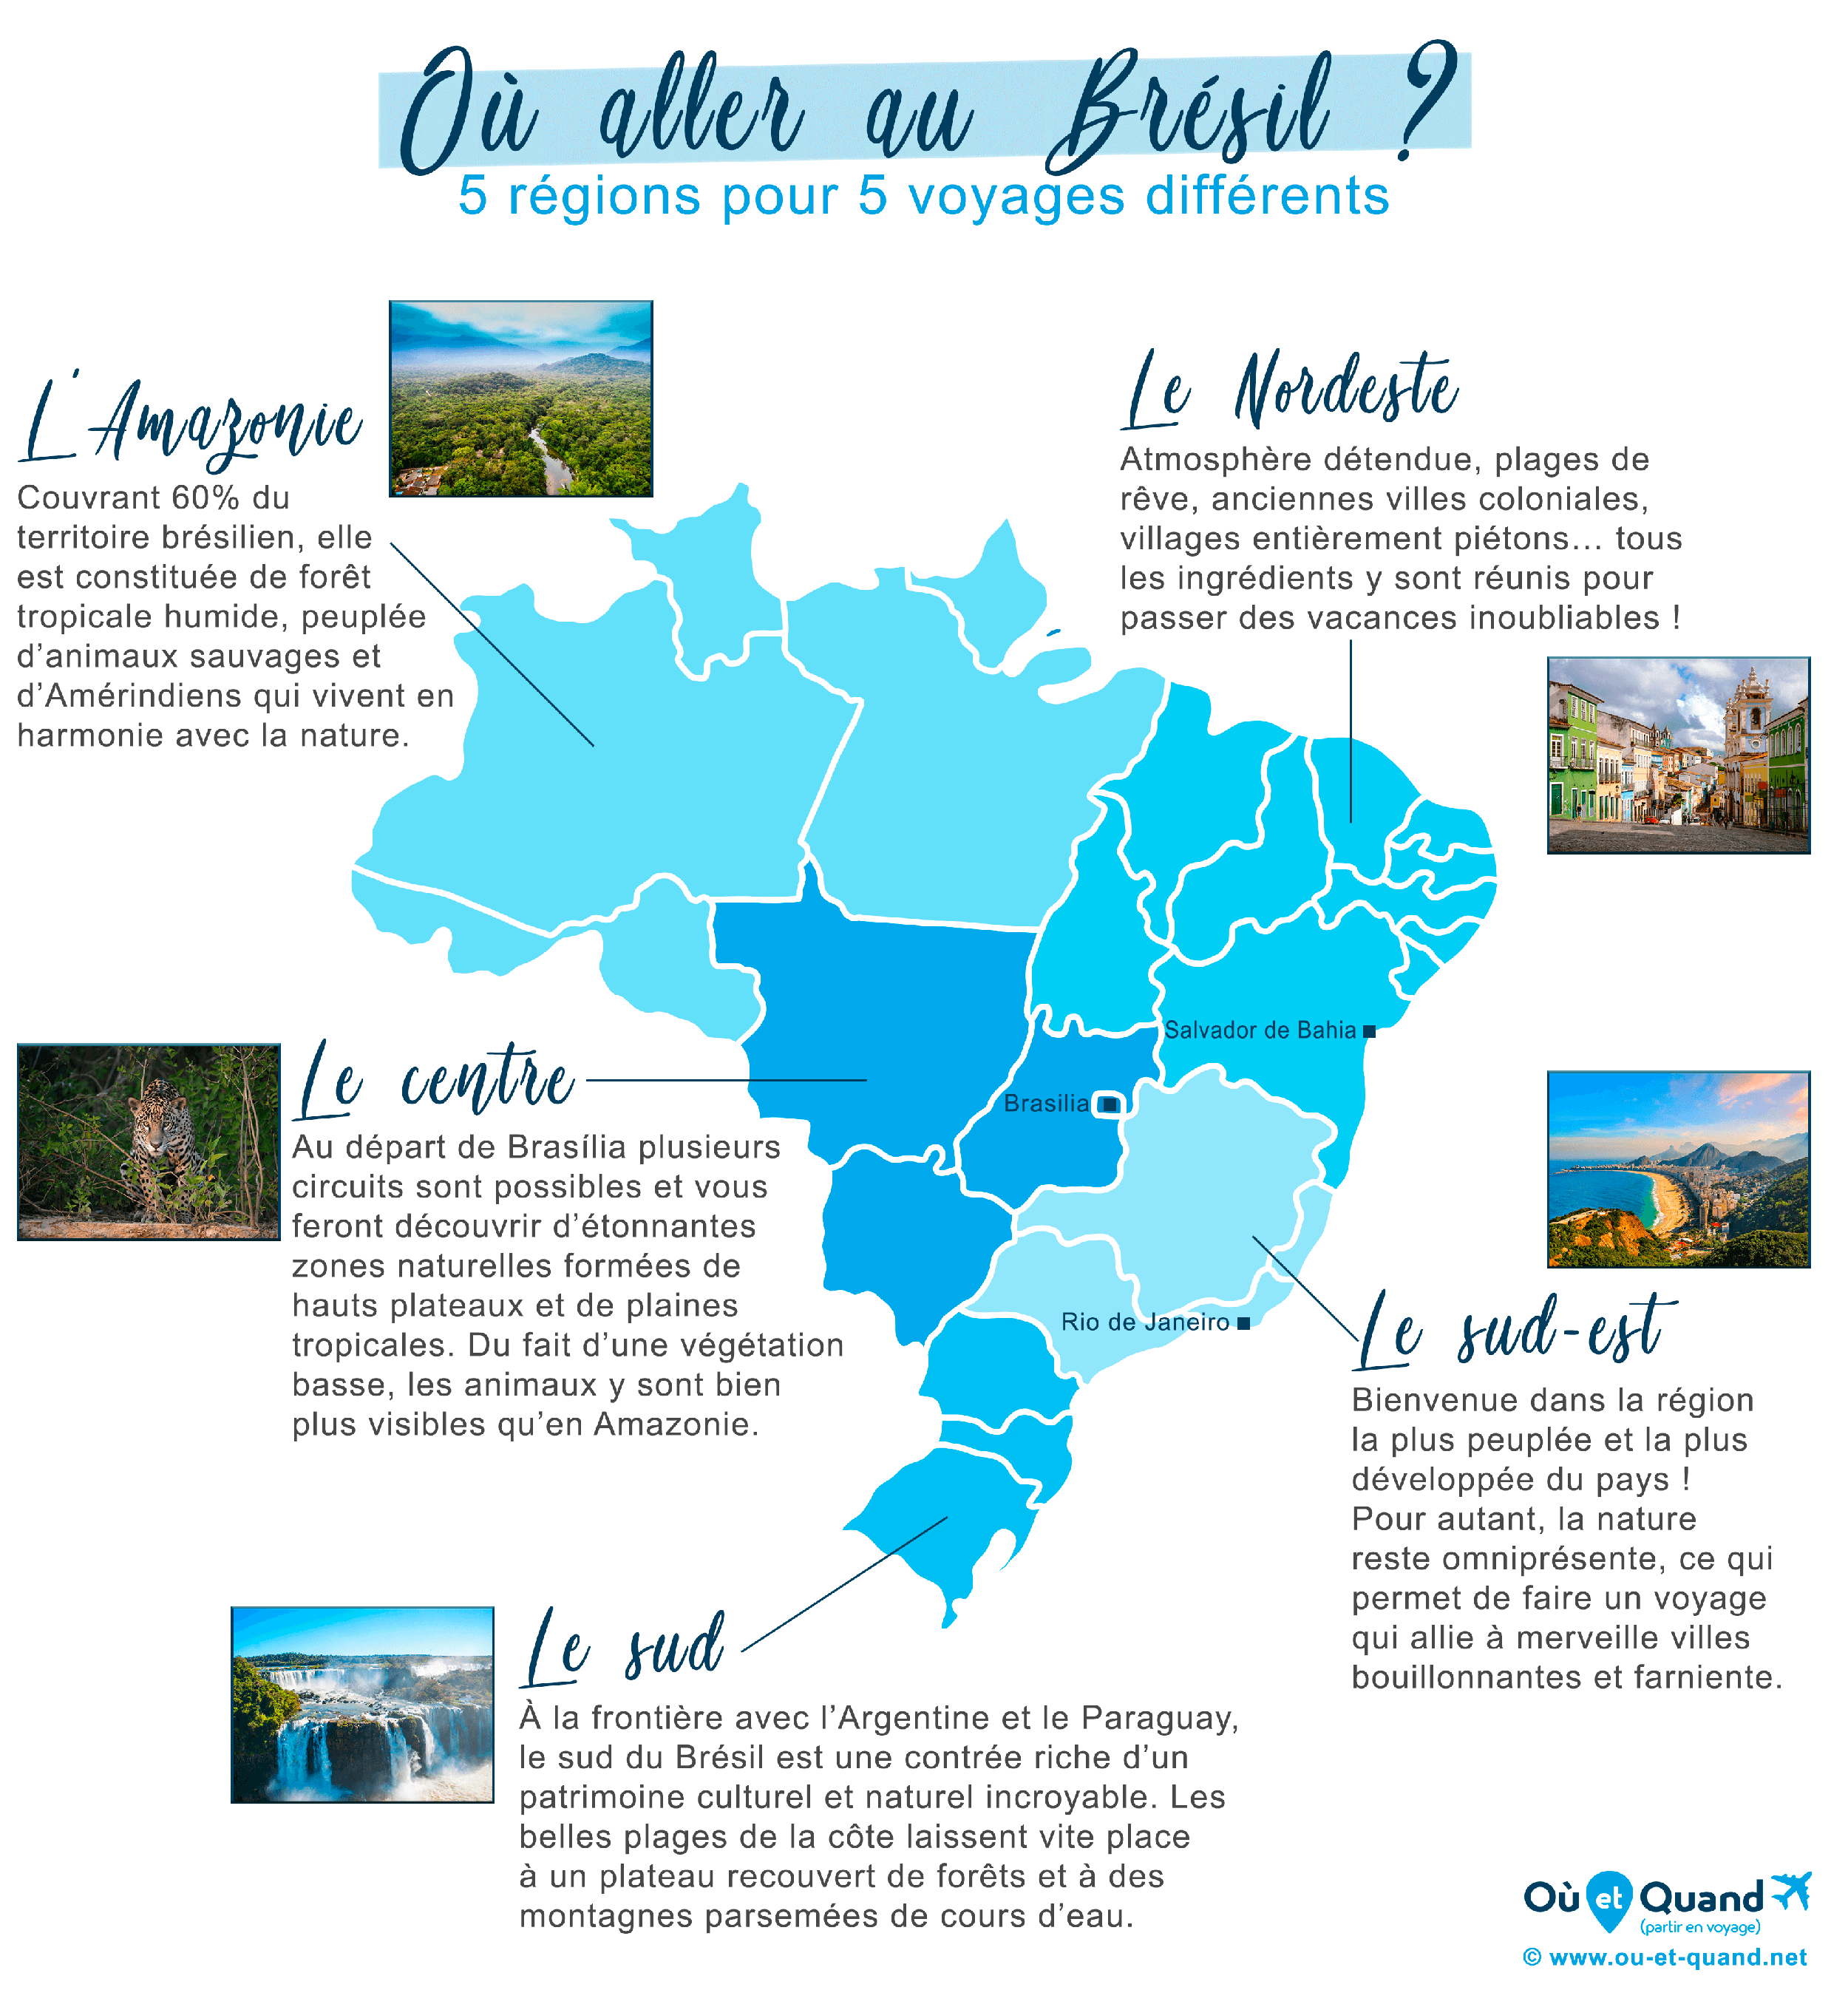 https://www.ou-et-quand.net/partir/images/cartes/bresil/carte-regions-touristiques-bresil-ou-aller.png